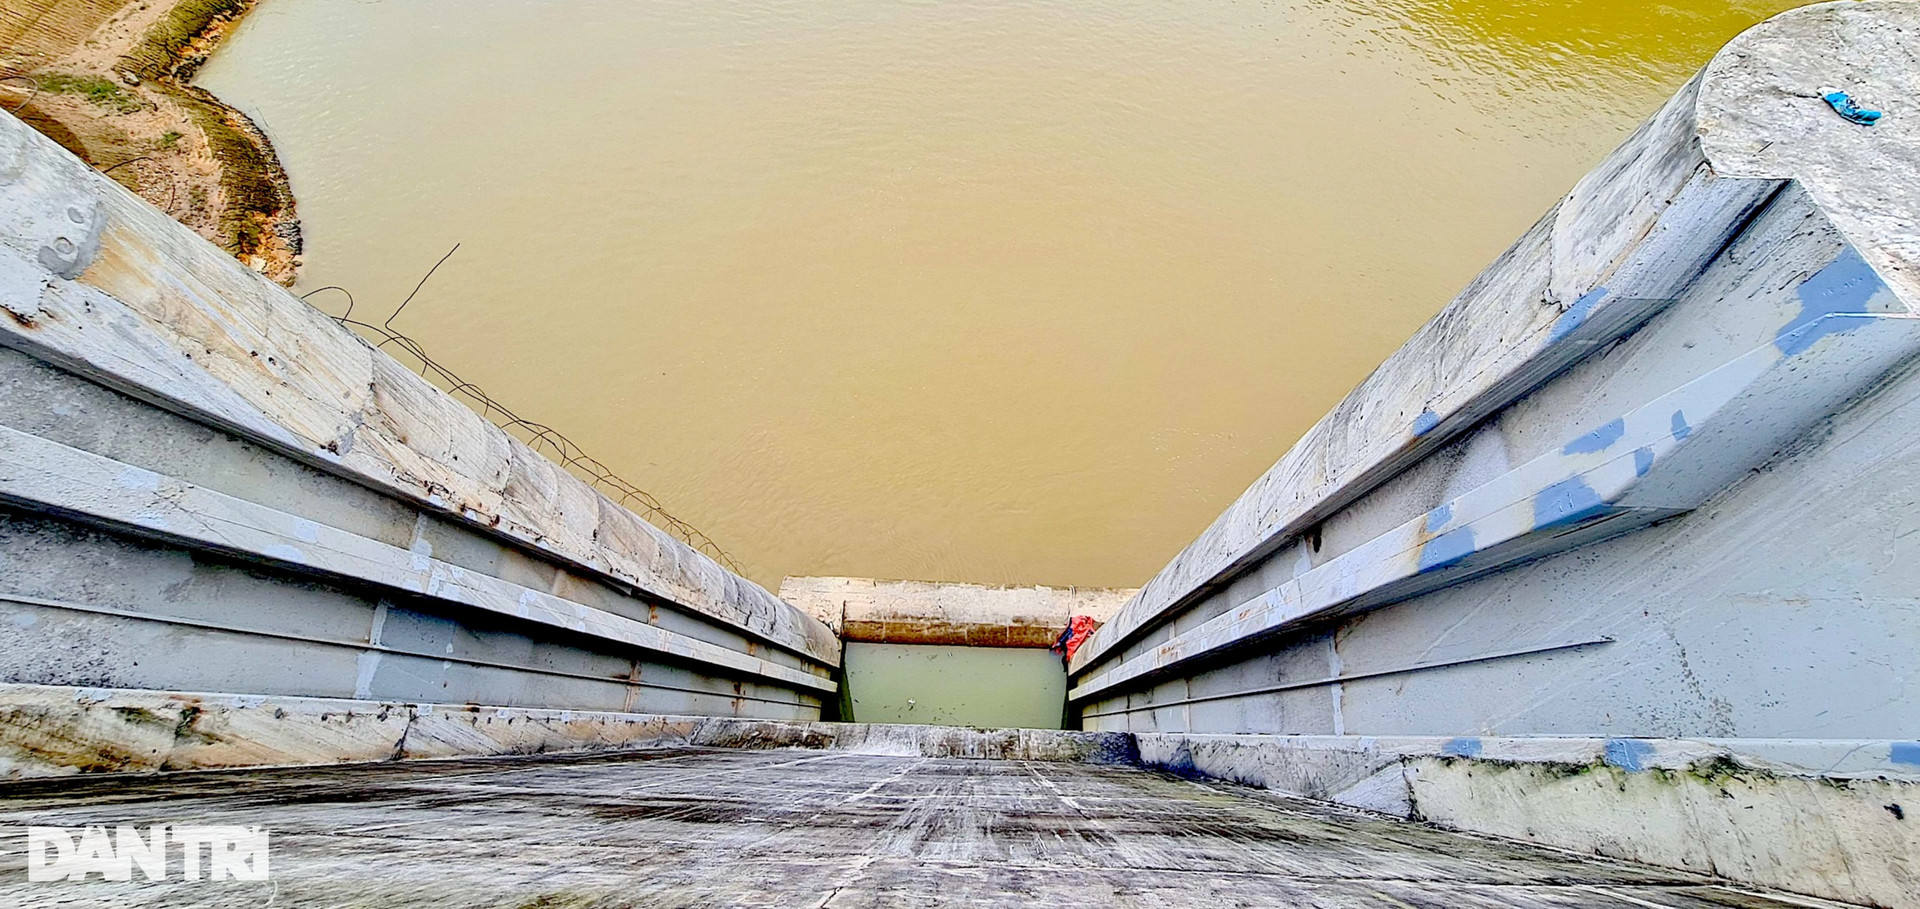 Đại công trình hơn 5.300 tỷ đồng có đường hầm xuyên lòng sông - 17